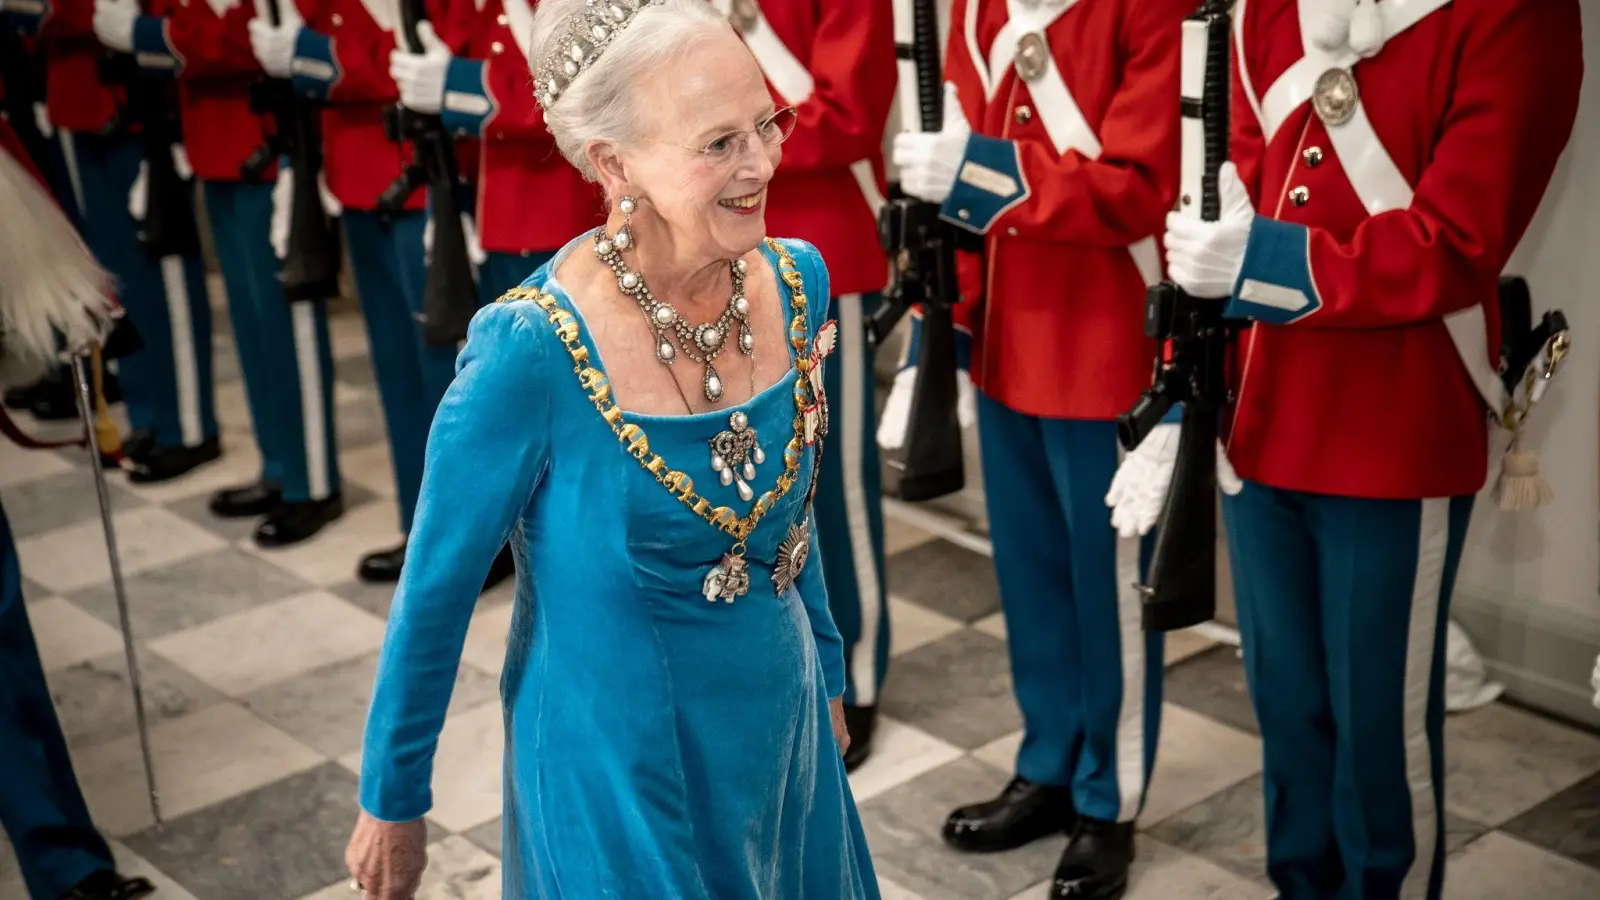 Königin Margrethe ist bereits seit 1972 das Staatsoberhaupt von Dänemark. Nach der Queen ist sie die am längsten amtierende Monarchin der Welt. (Foto: Mads Claus Rasmussen/Ritzau Scanpix Foto/AP/dpa)